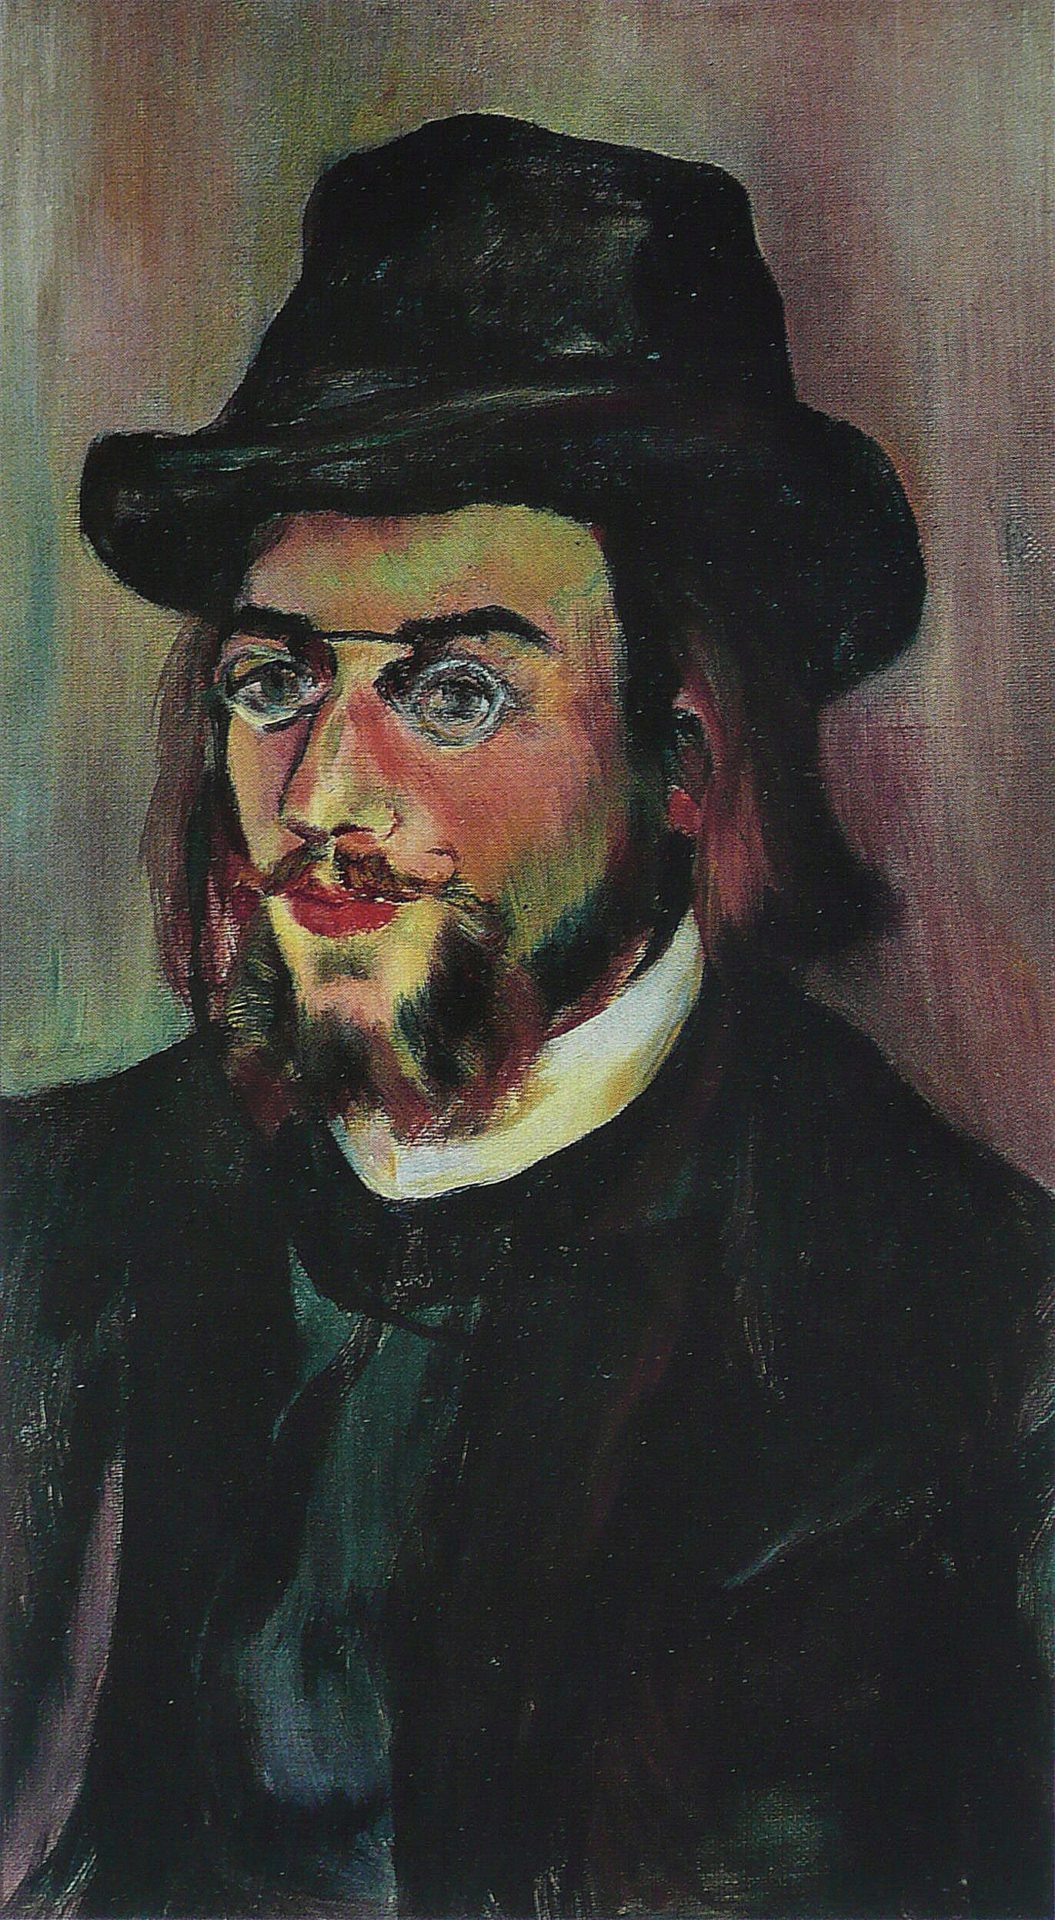 painting of young Erik Satie